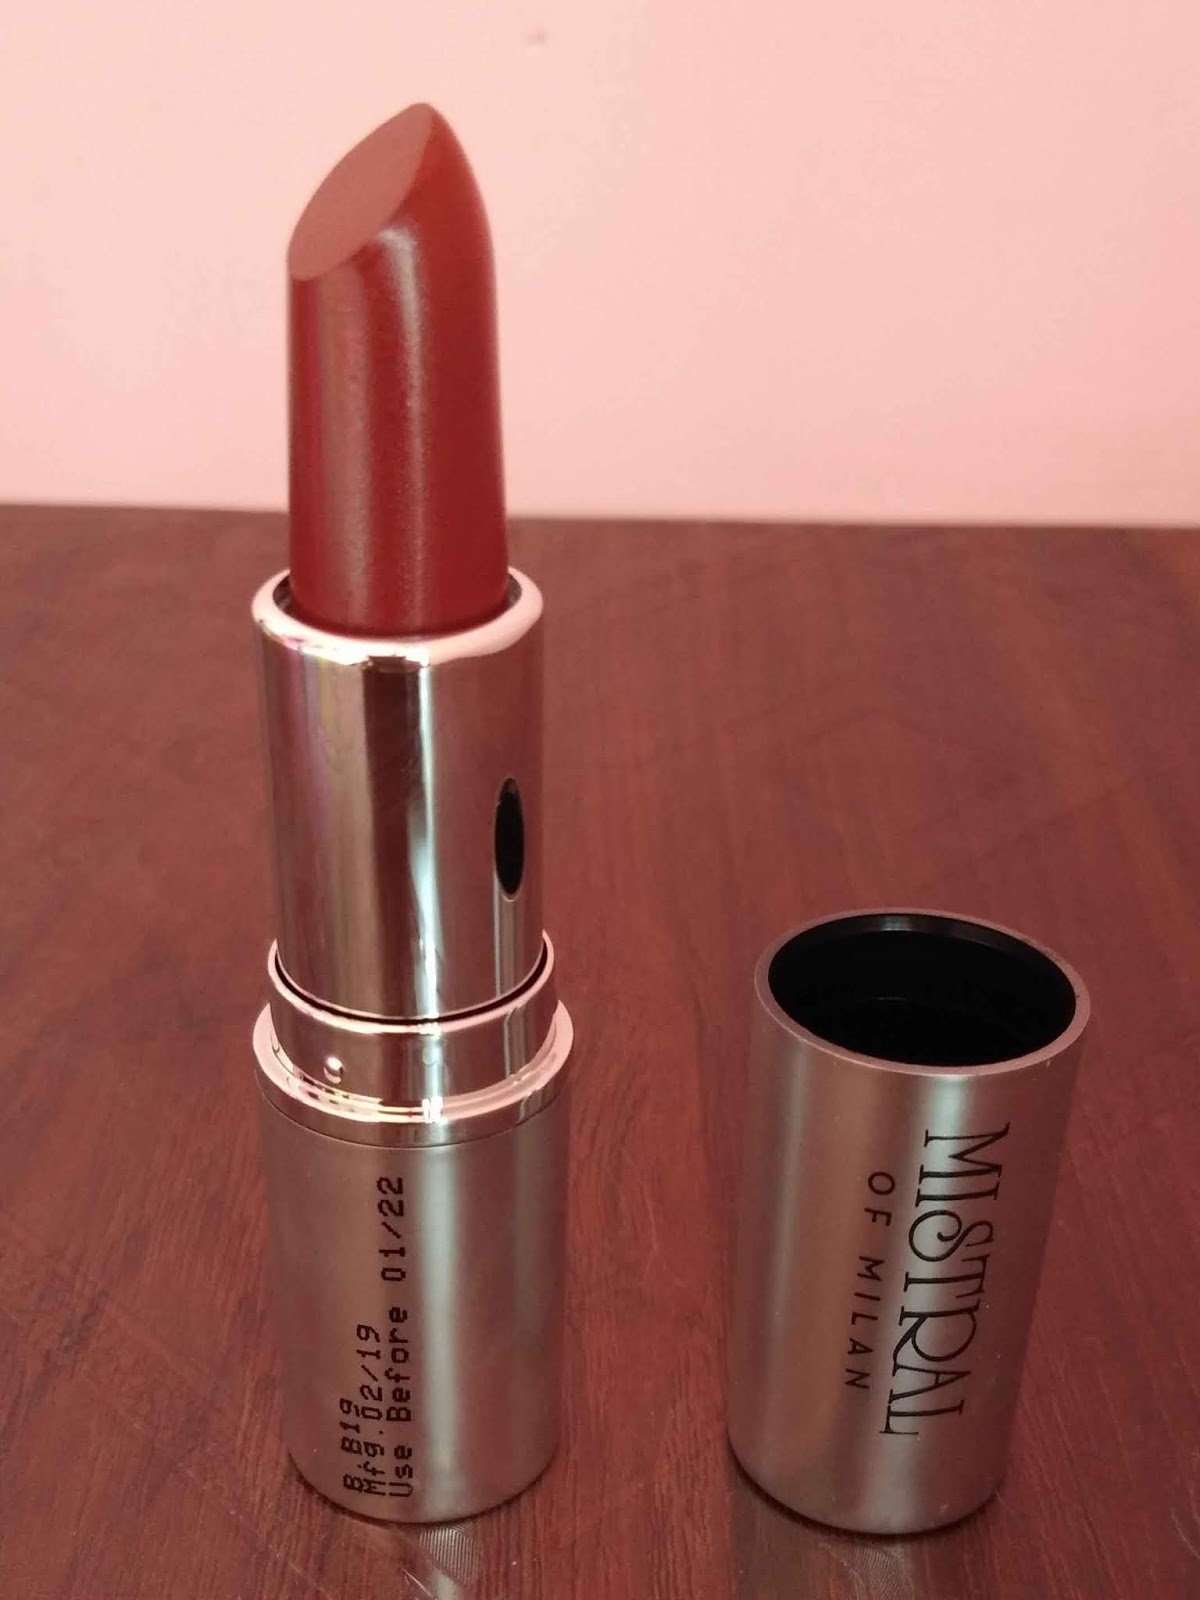 Velvet Matte Lipstick | e.l.f. Cosmetics- Cruelty Free